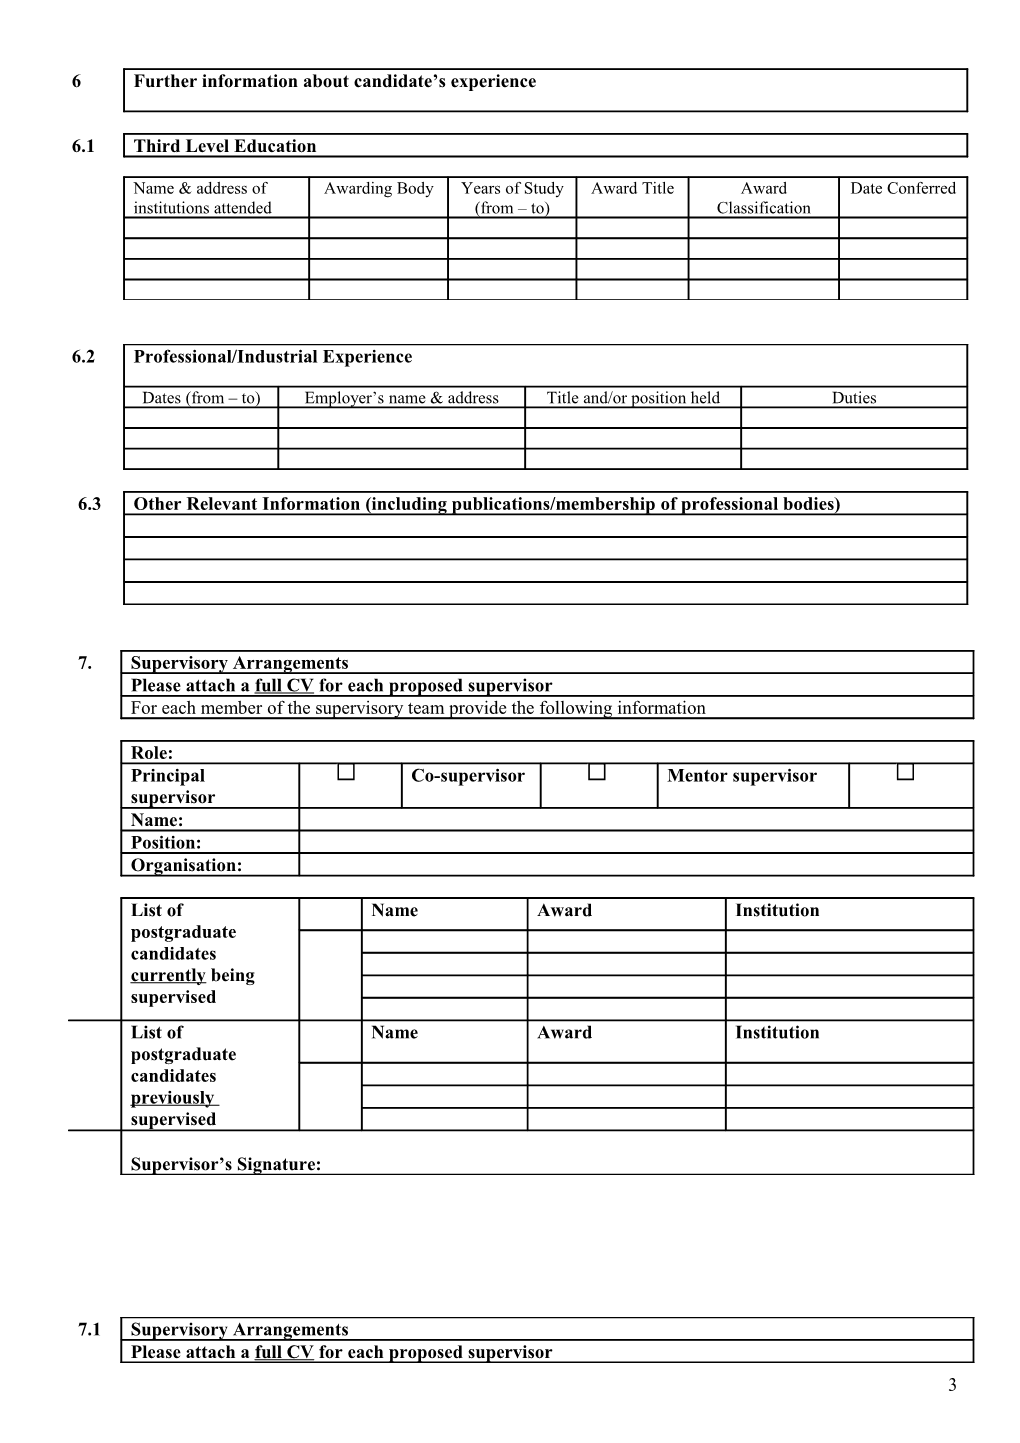 Application to Hetac for Registration